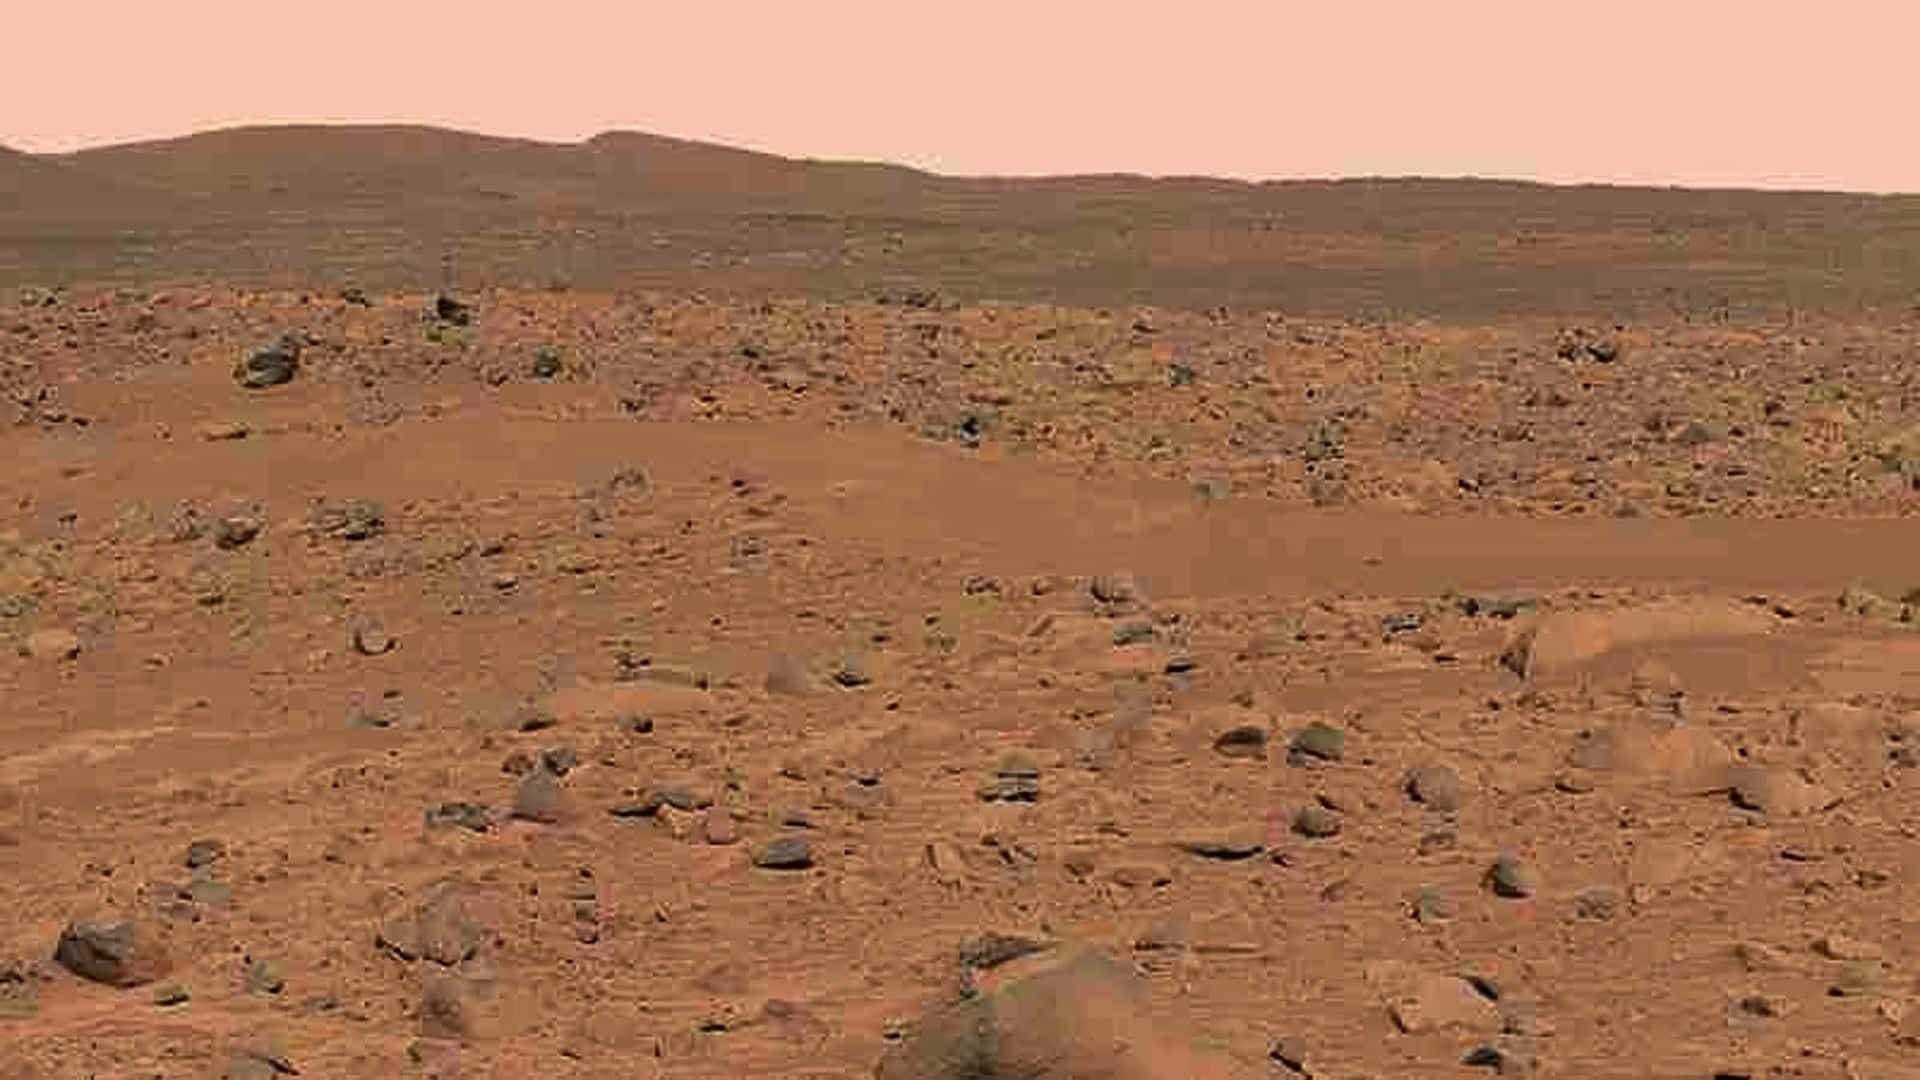 Elrover Curiosity De La Nasa Conduciendo En Marte.